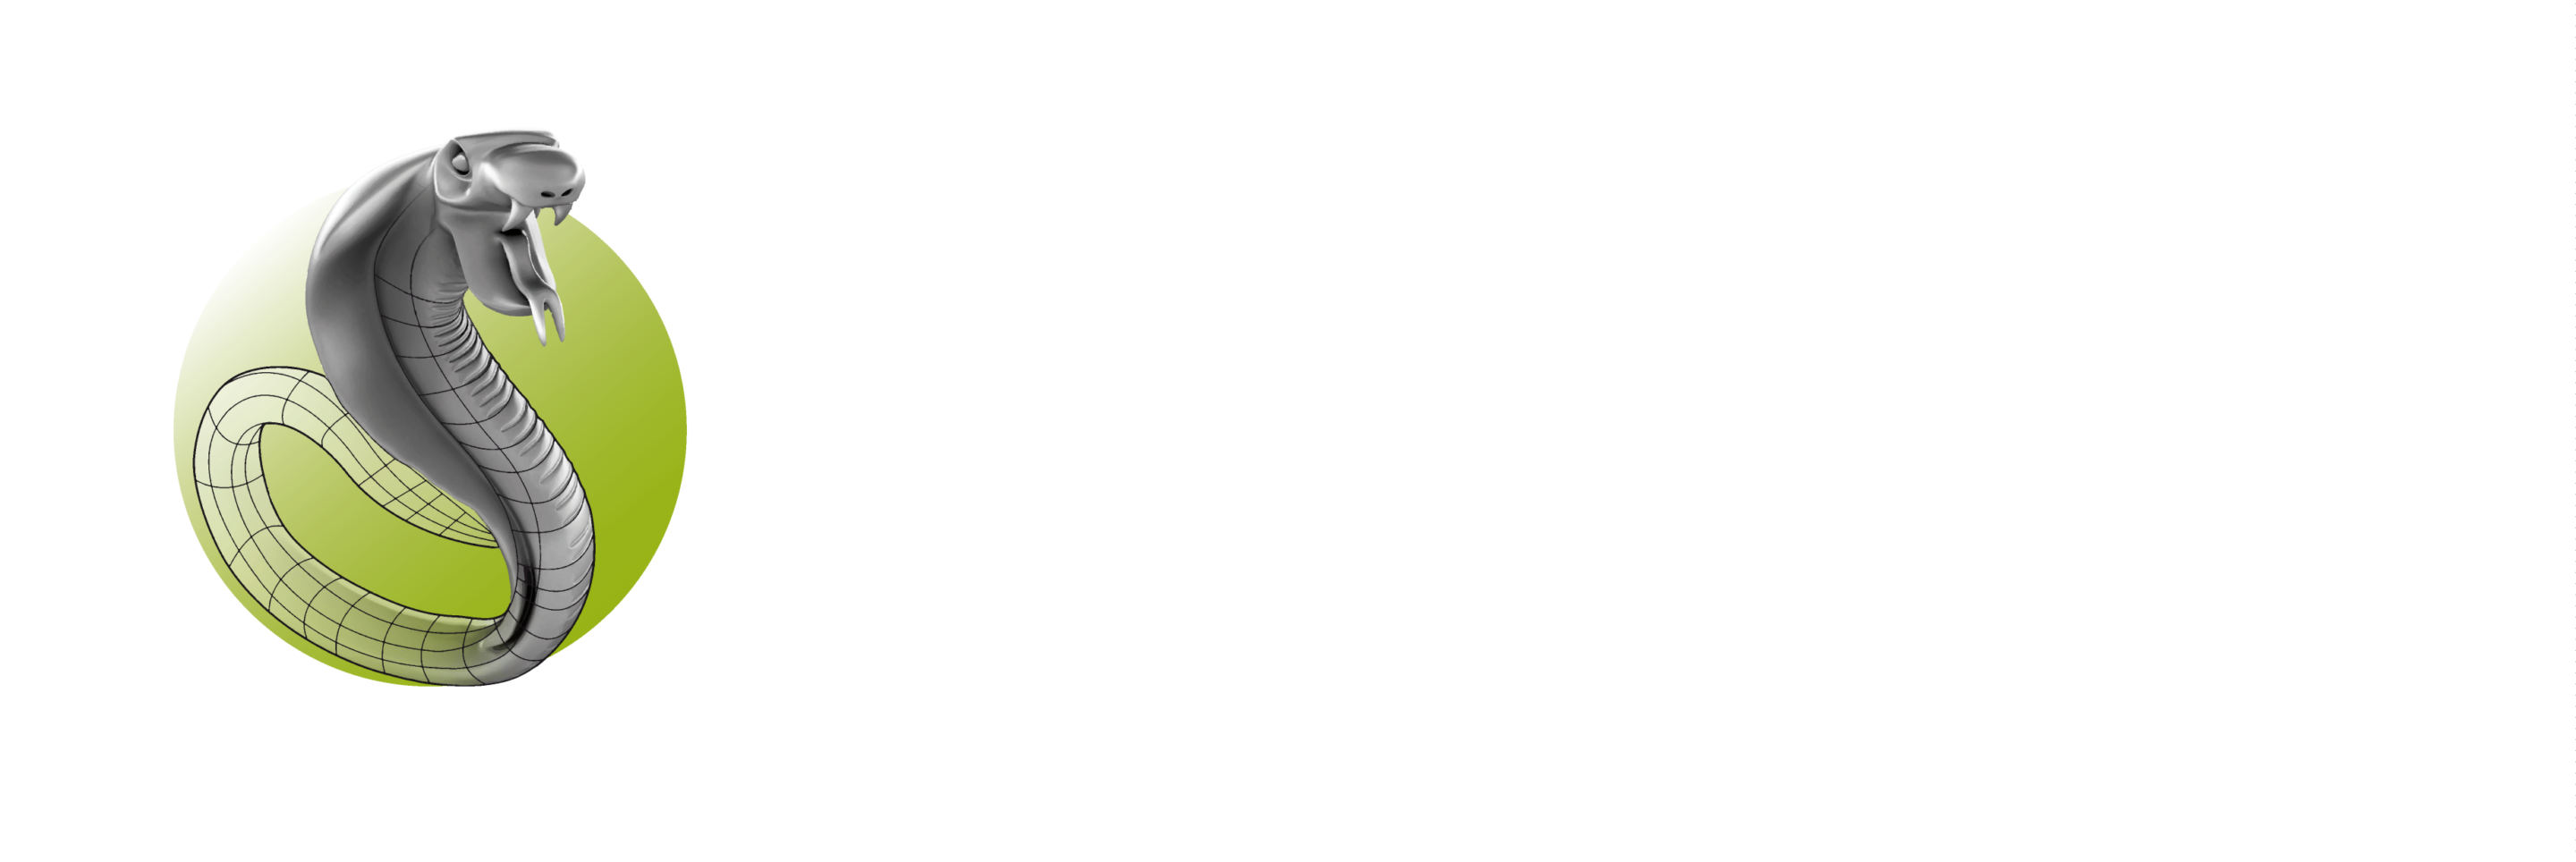 3Shaper_logo_fondfonce